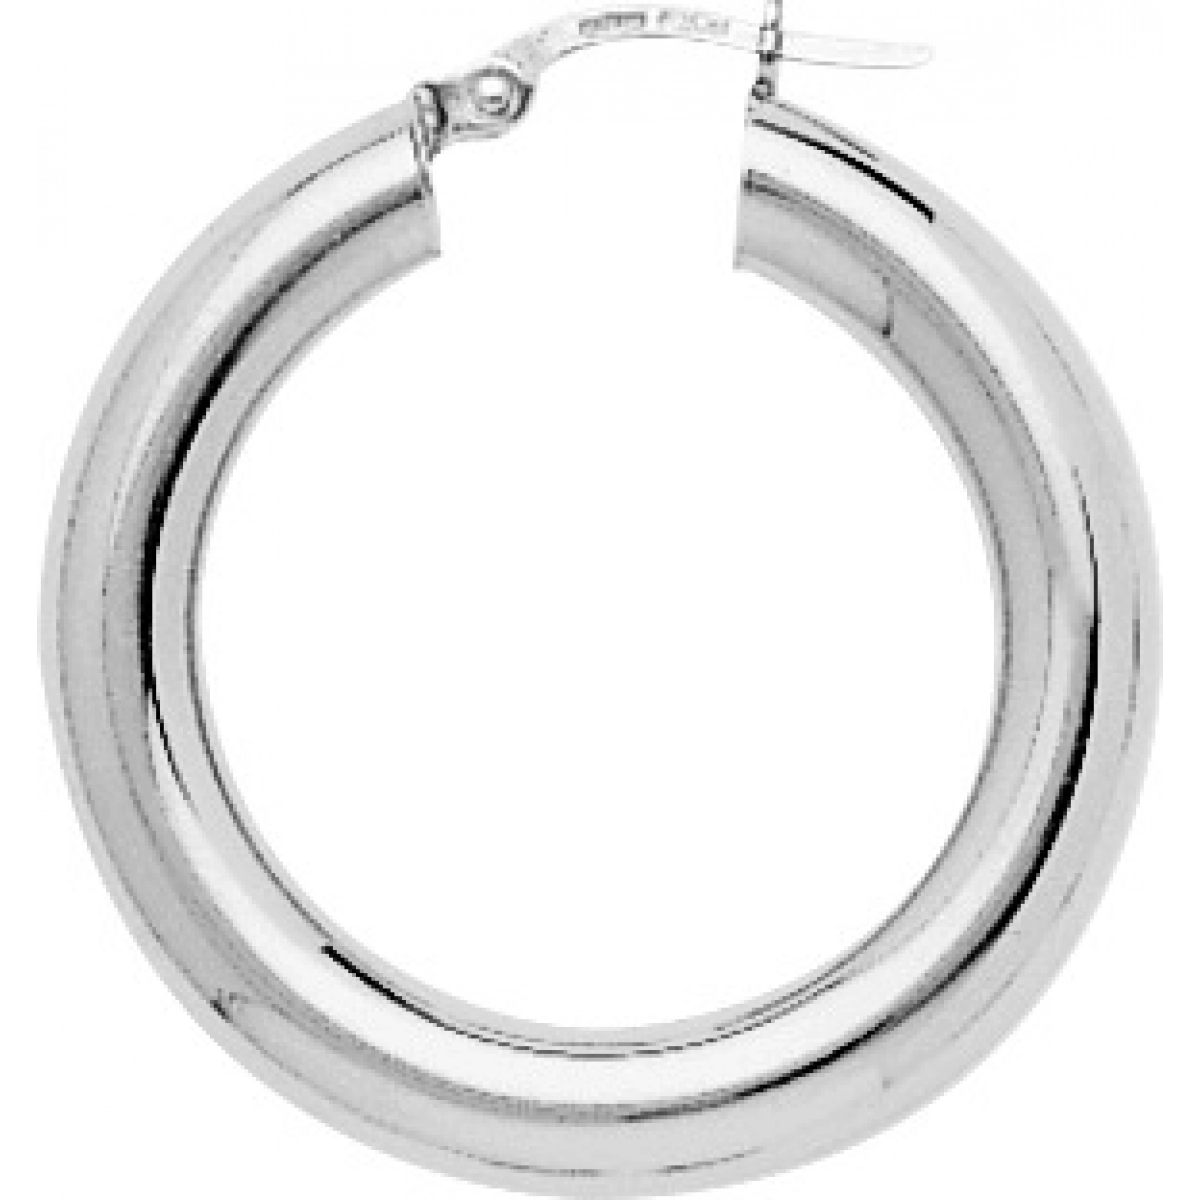 Hoops earrings pair rh925 Silver  Lua Blanca  335430.0